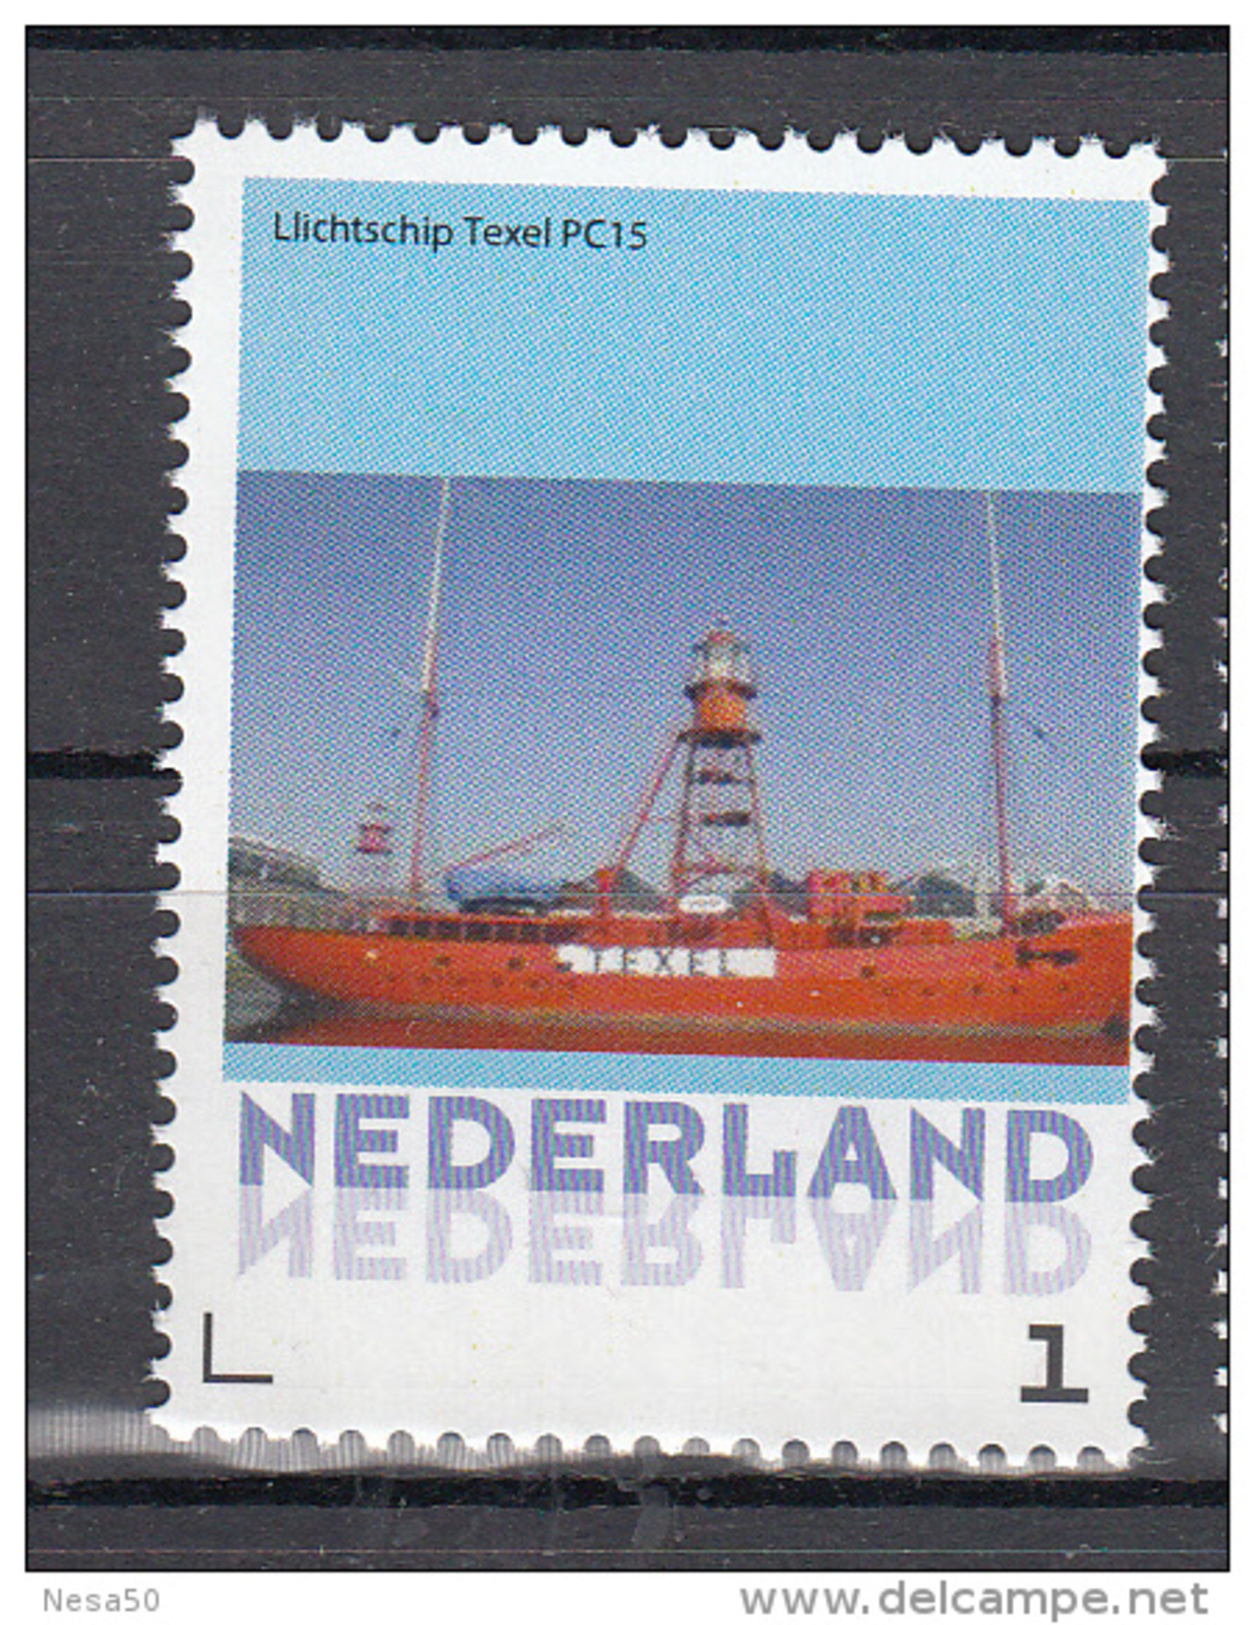 Nederland 2015 Persoonlijke Zegel: Lighthouse, Vuurtoren: Lichtschip Texel , Lightschip - Leuchttürme